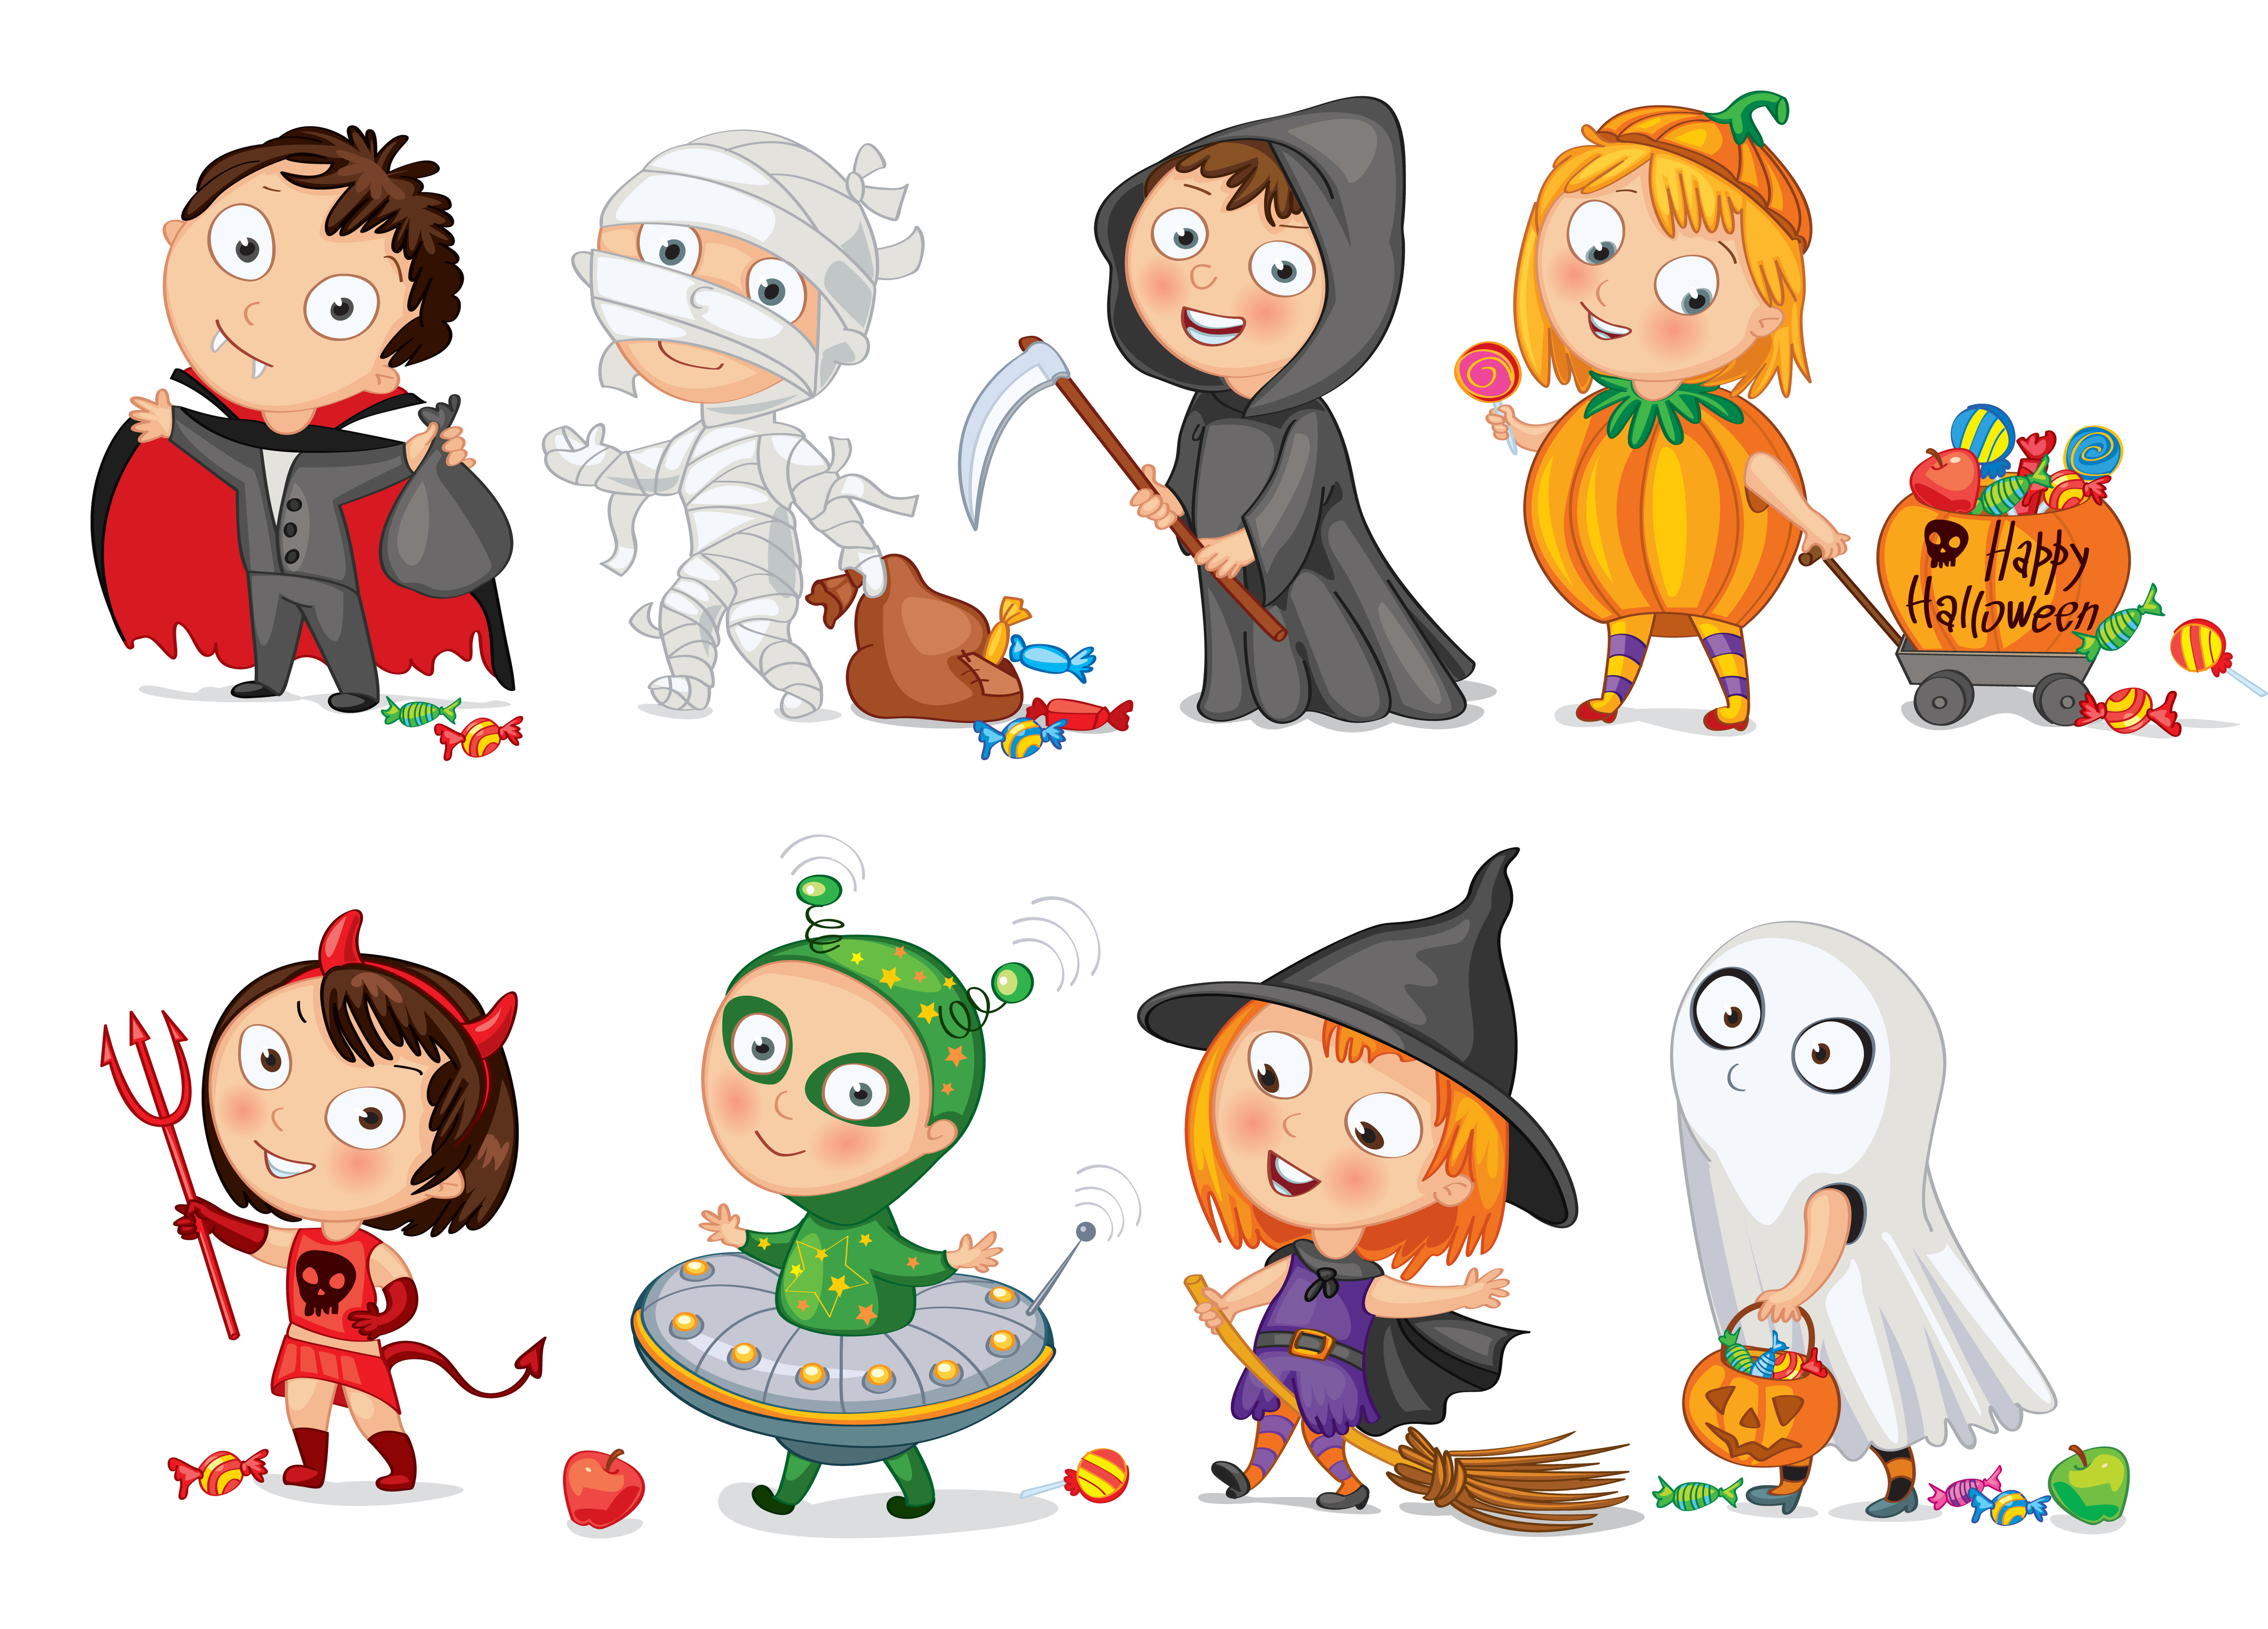 Cartoon kids in Halloween costumes